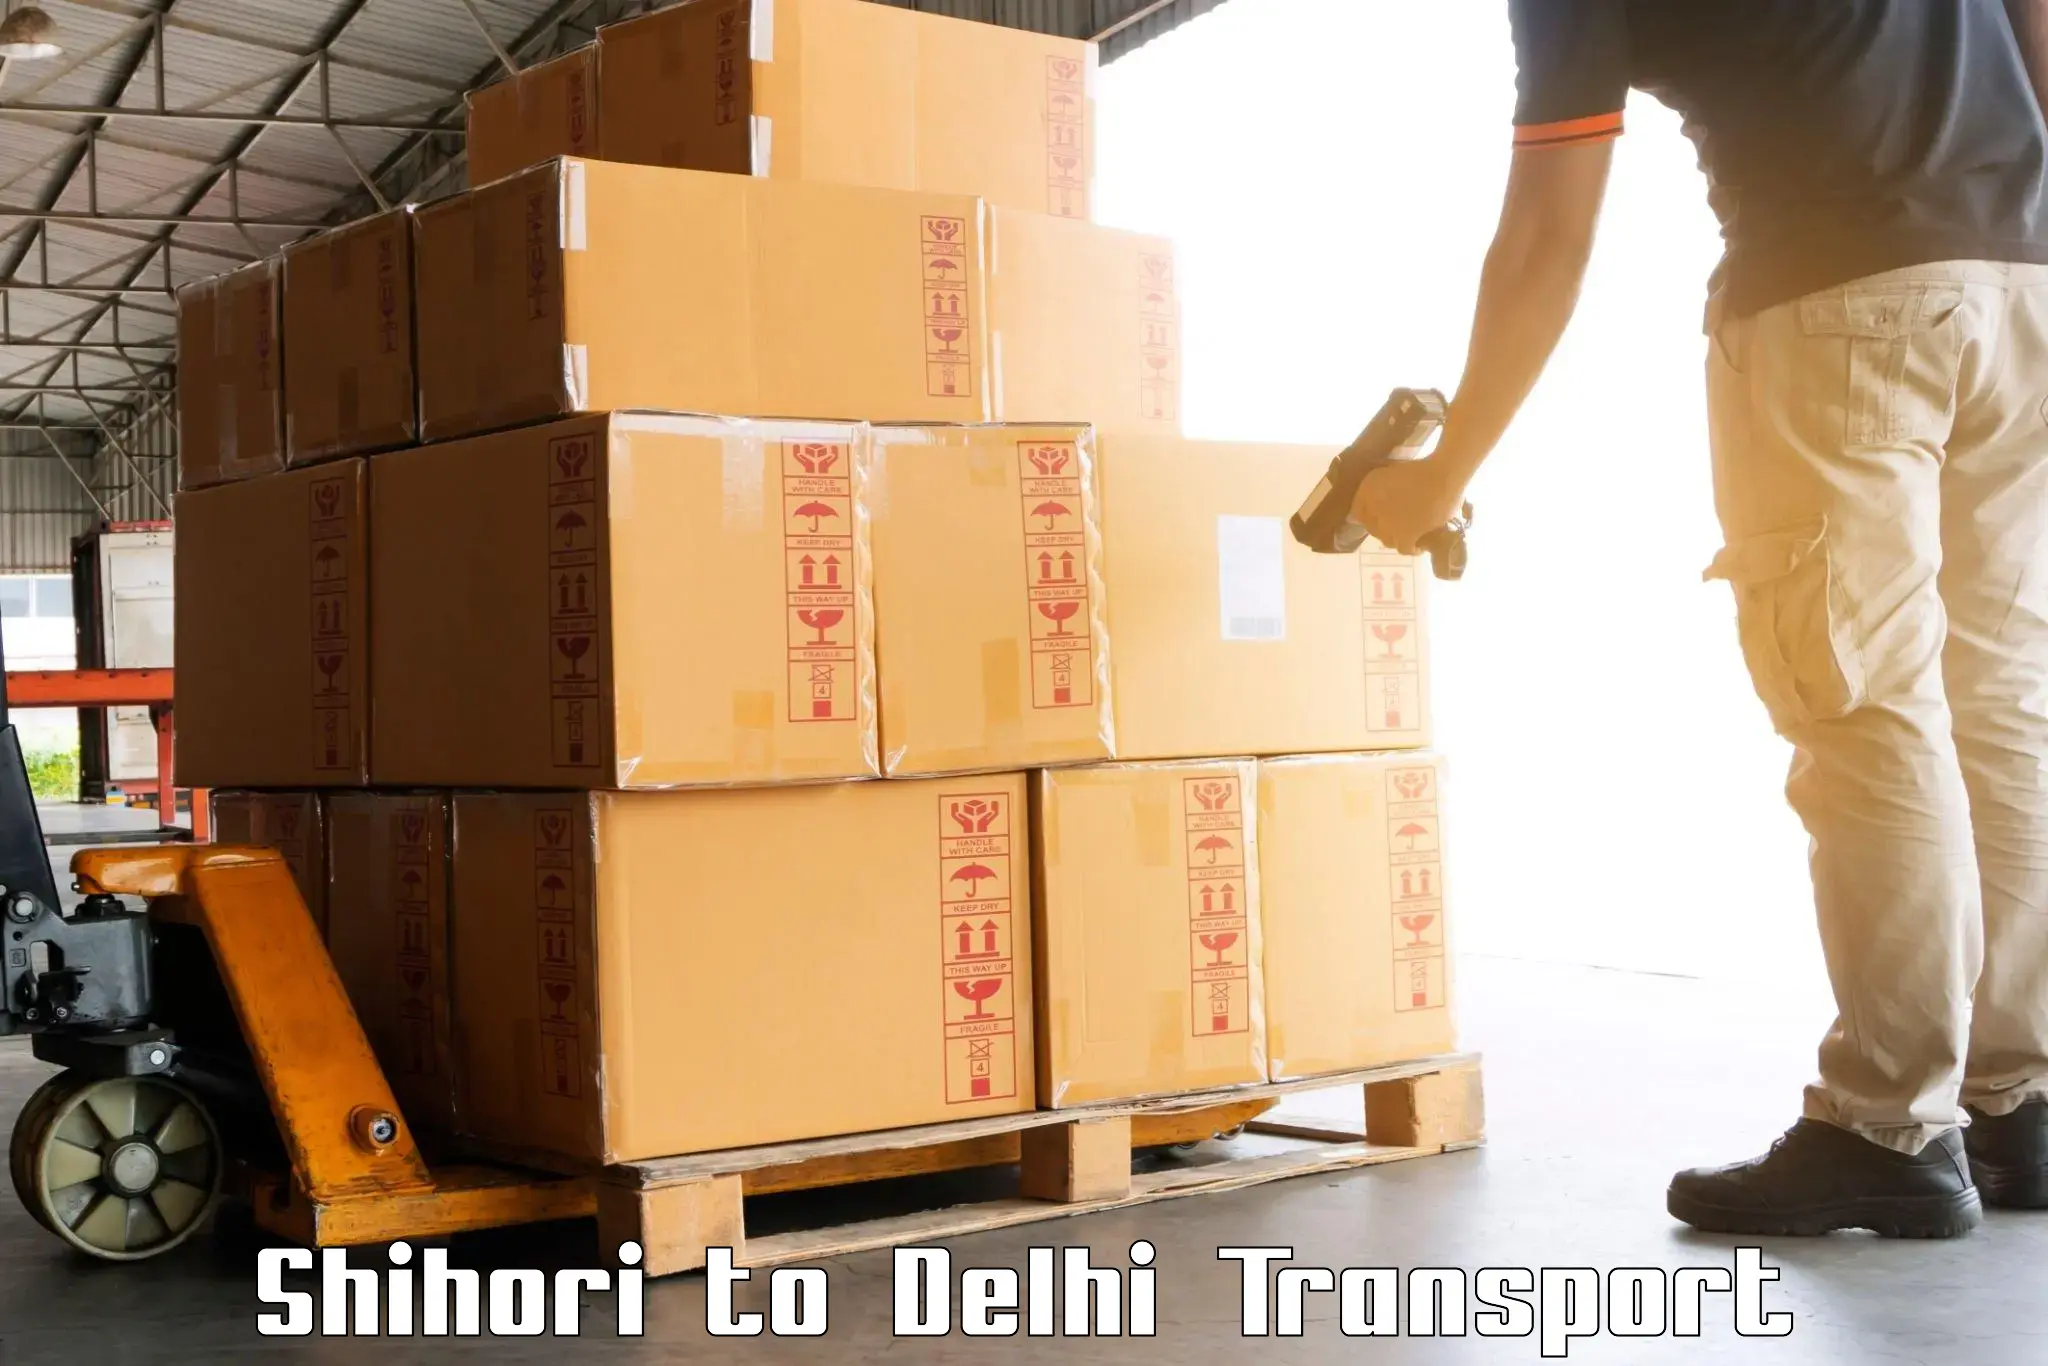 Online transport booking Shihori to Jamia Millia Islamia New Delhi